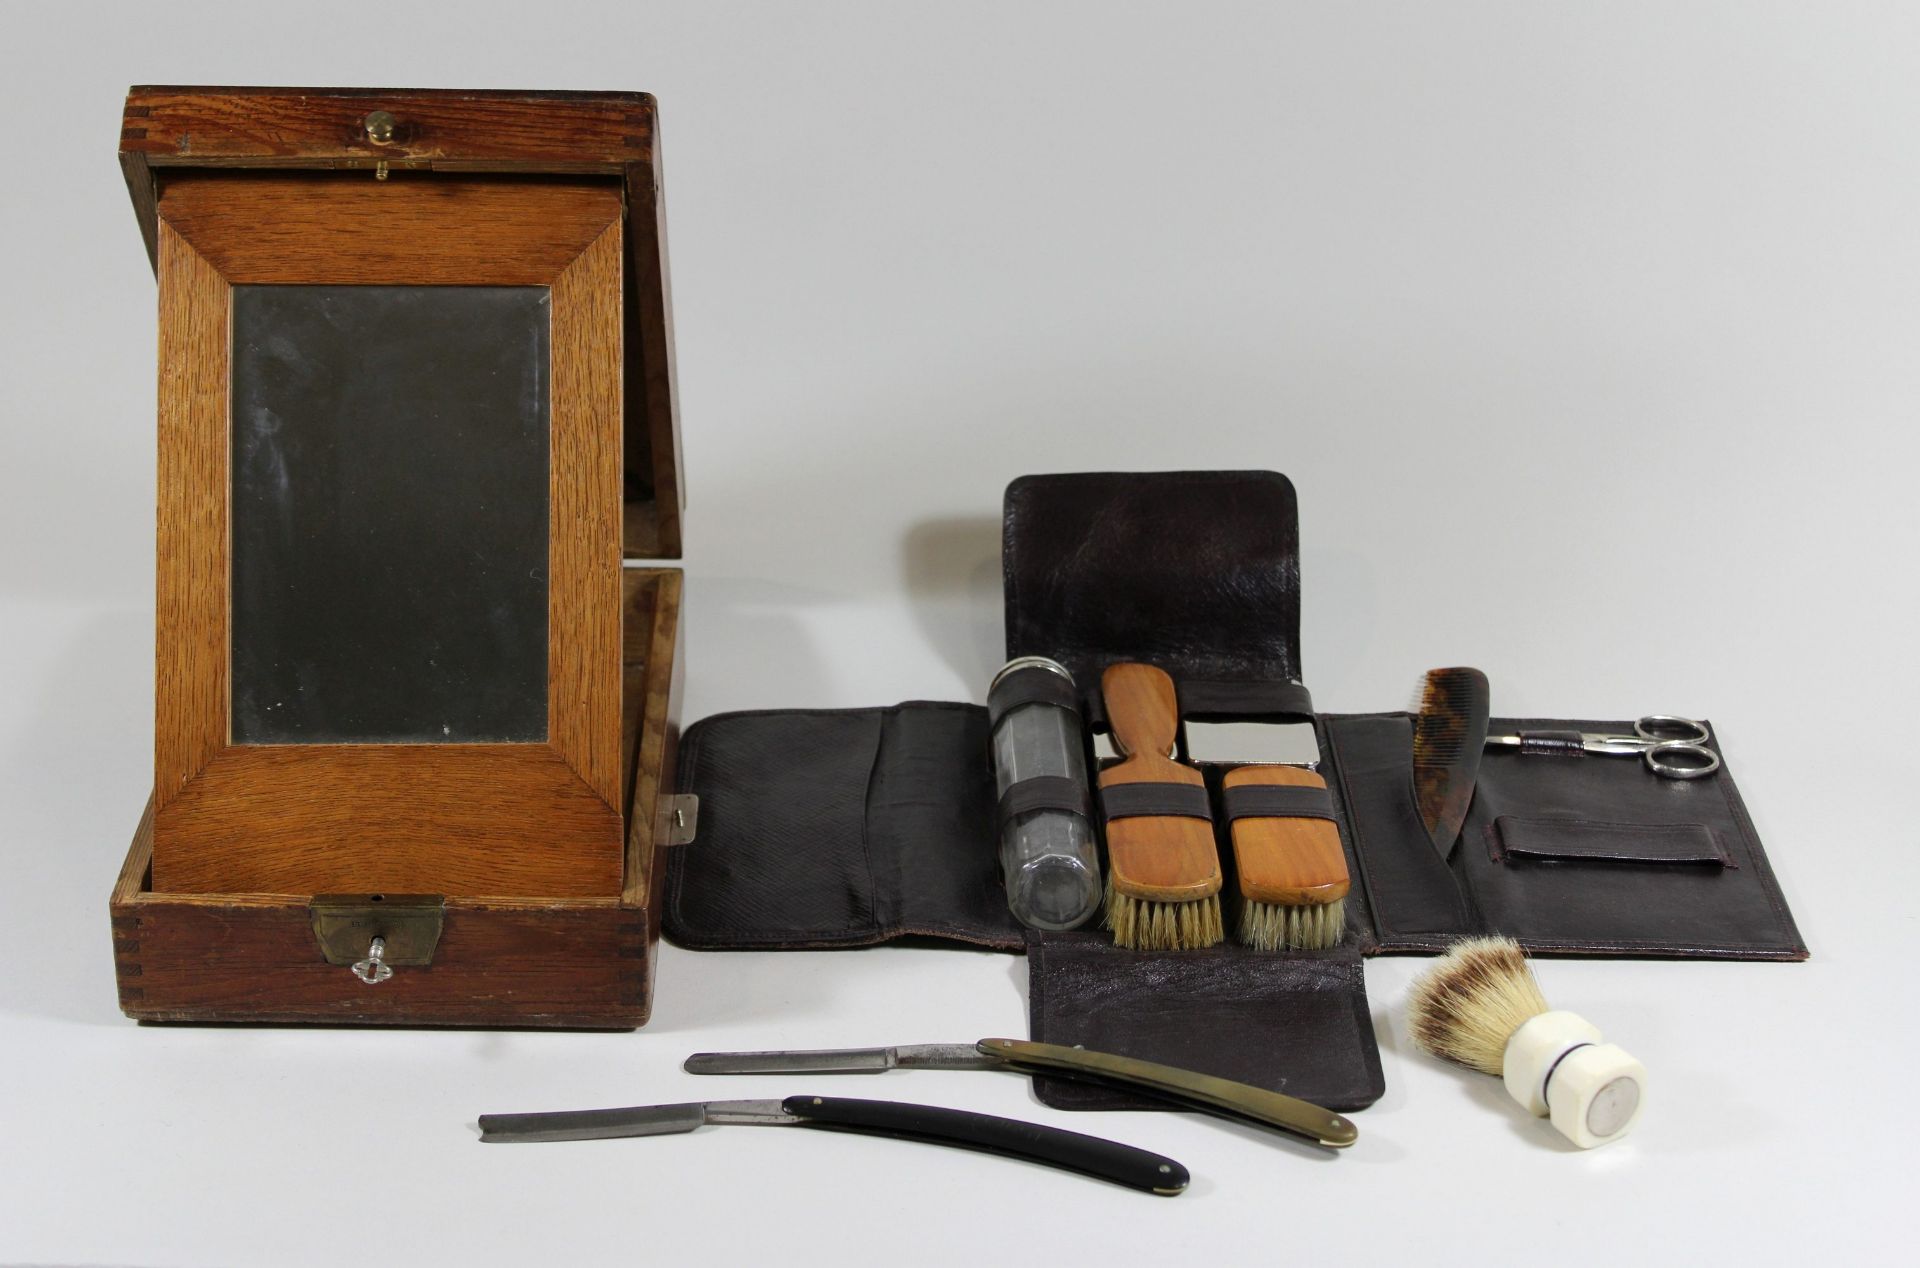 Rasierbox mit Reiseset, Box aus Holz mit ausklappbaren Spiegel - Image 3 of 3